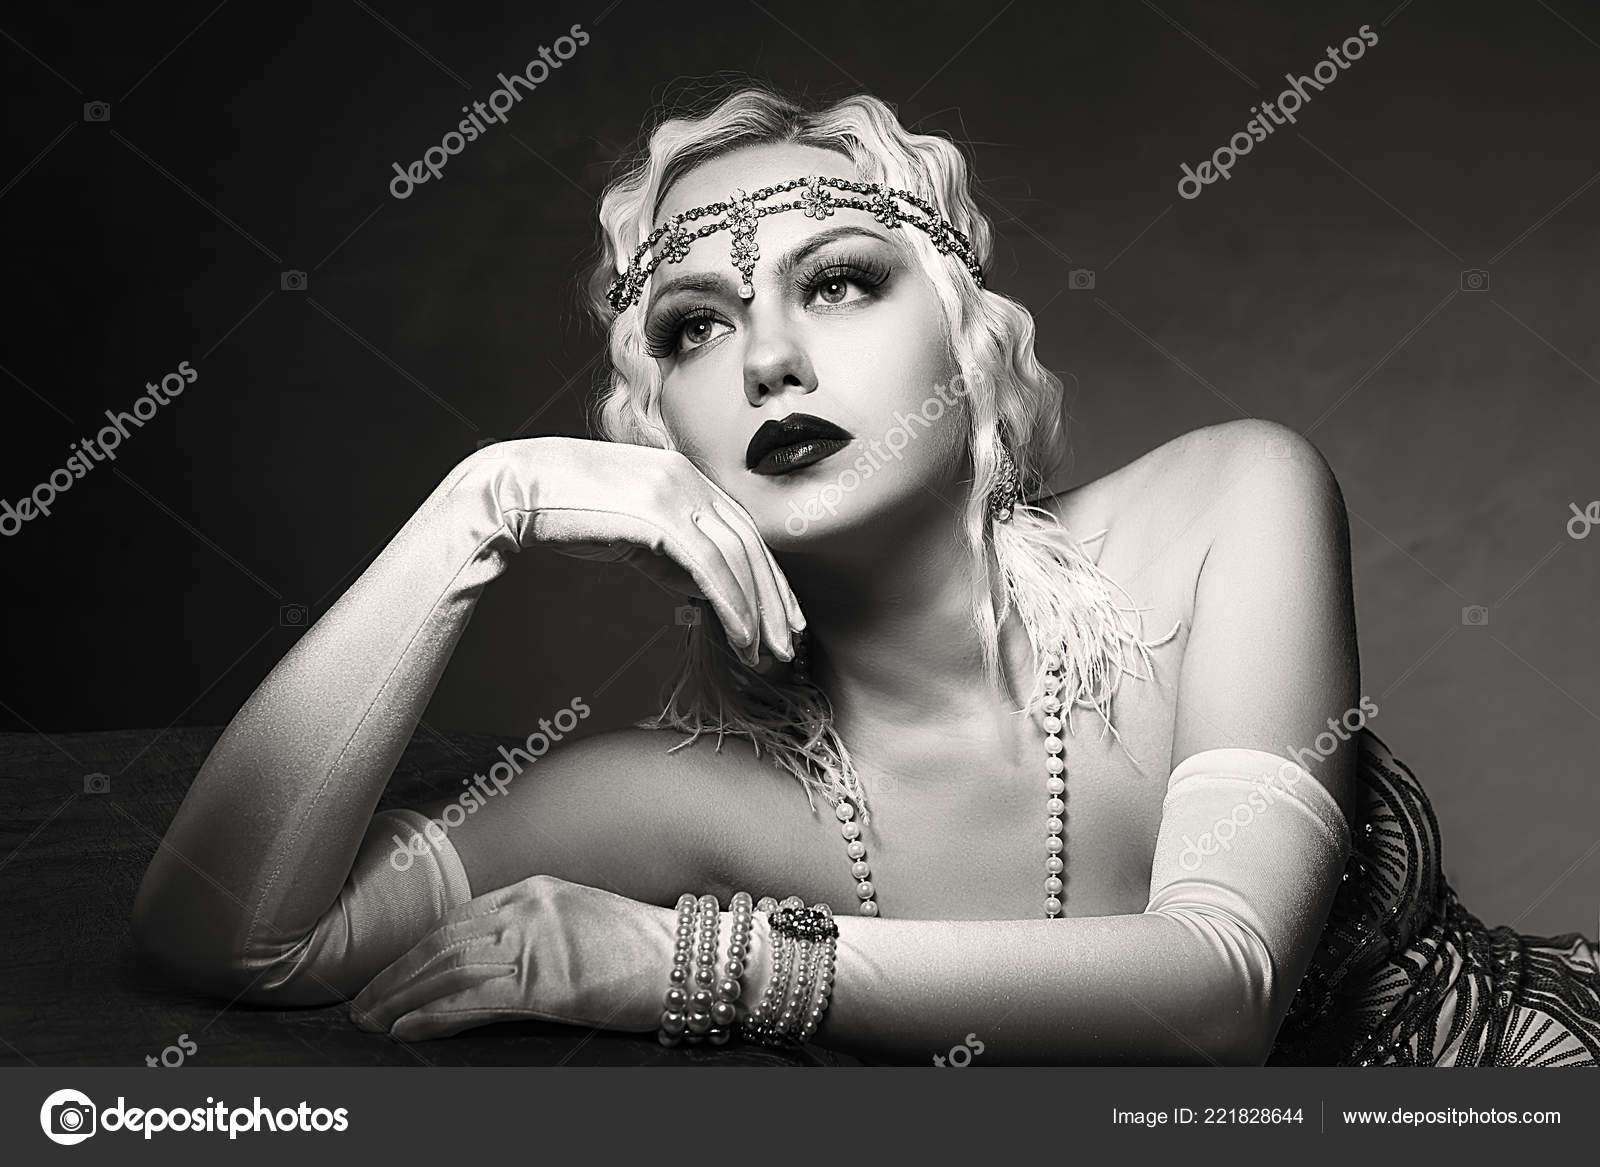 1920s woman Stock Photos, Royalty Free 1920s woman Images | Depositphotos